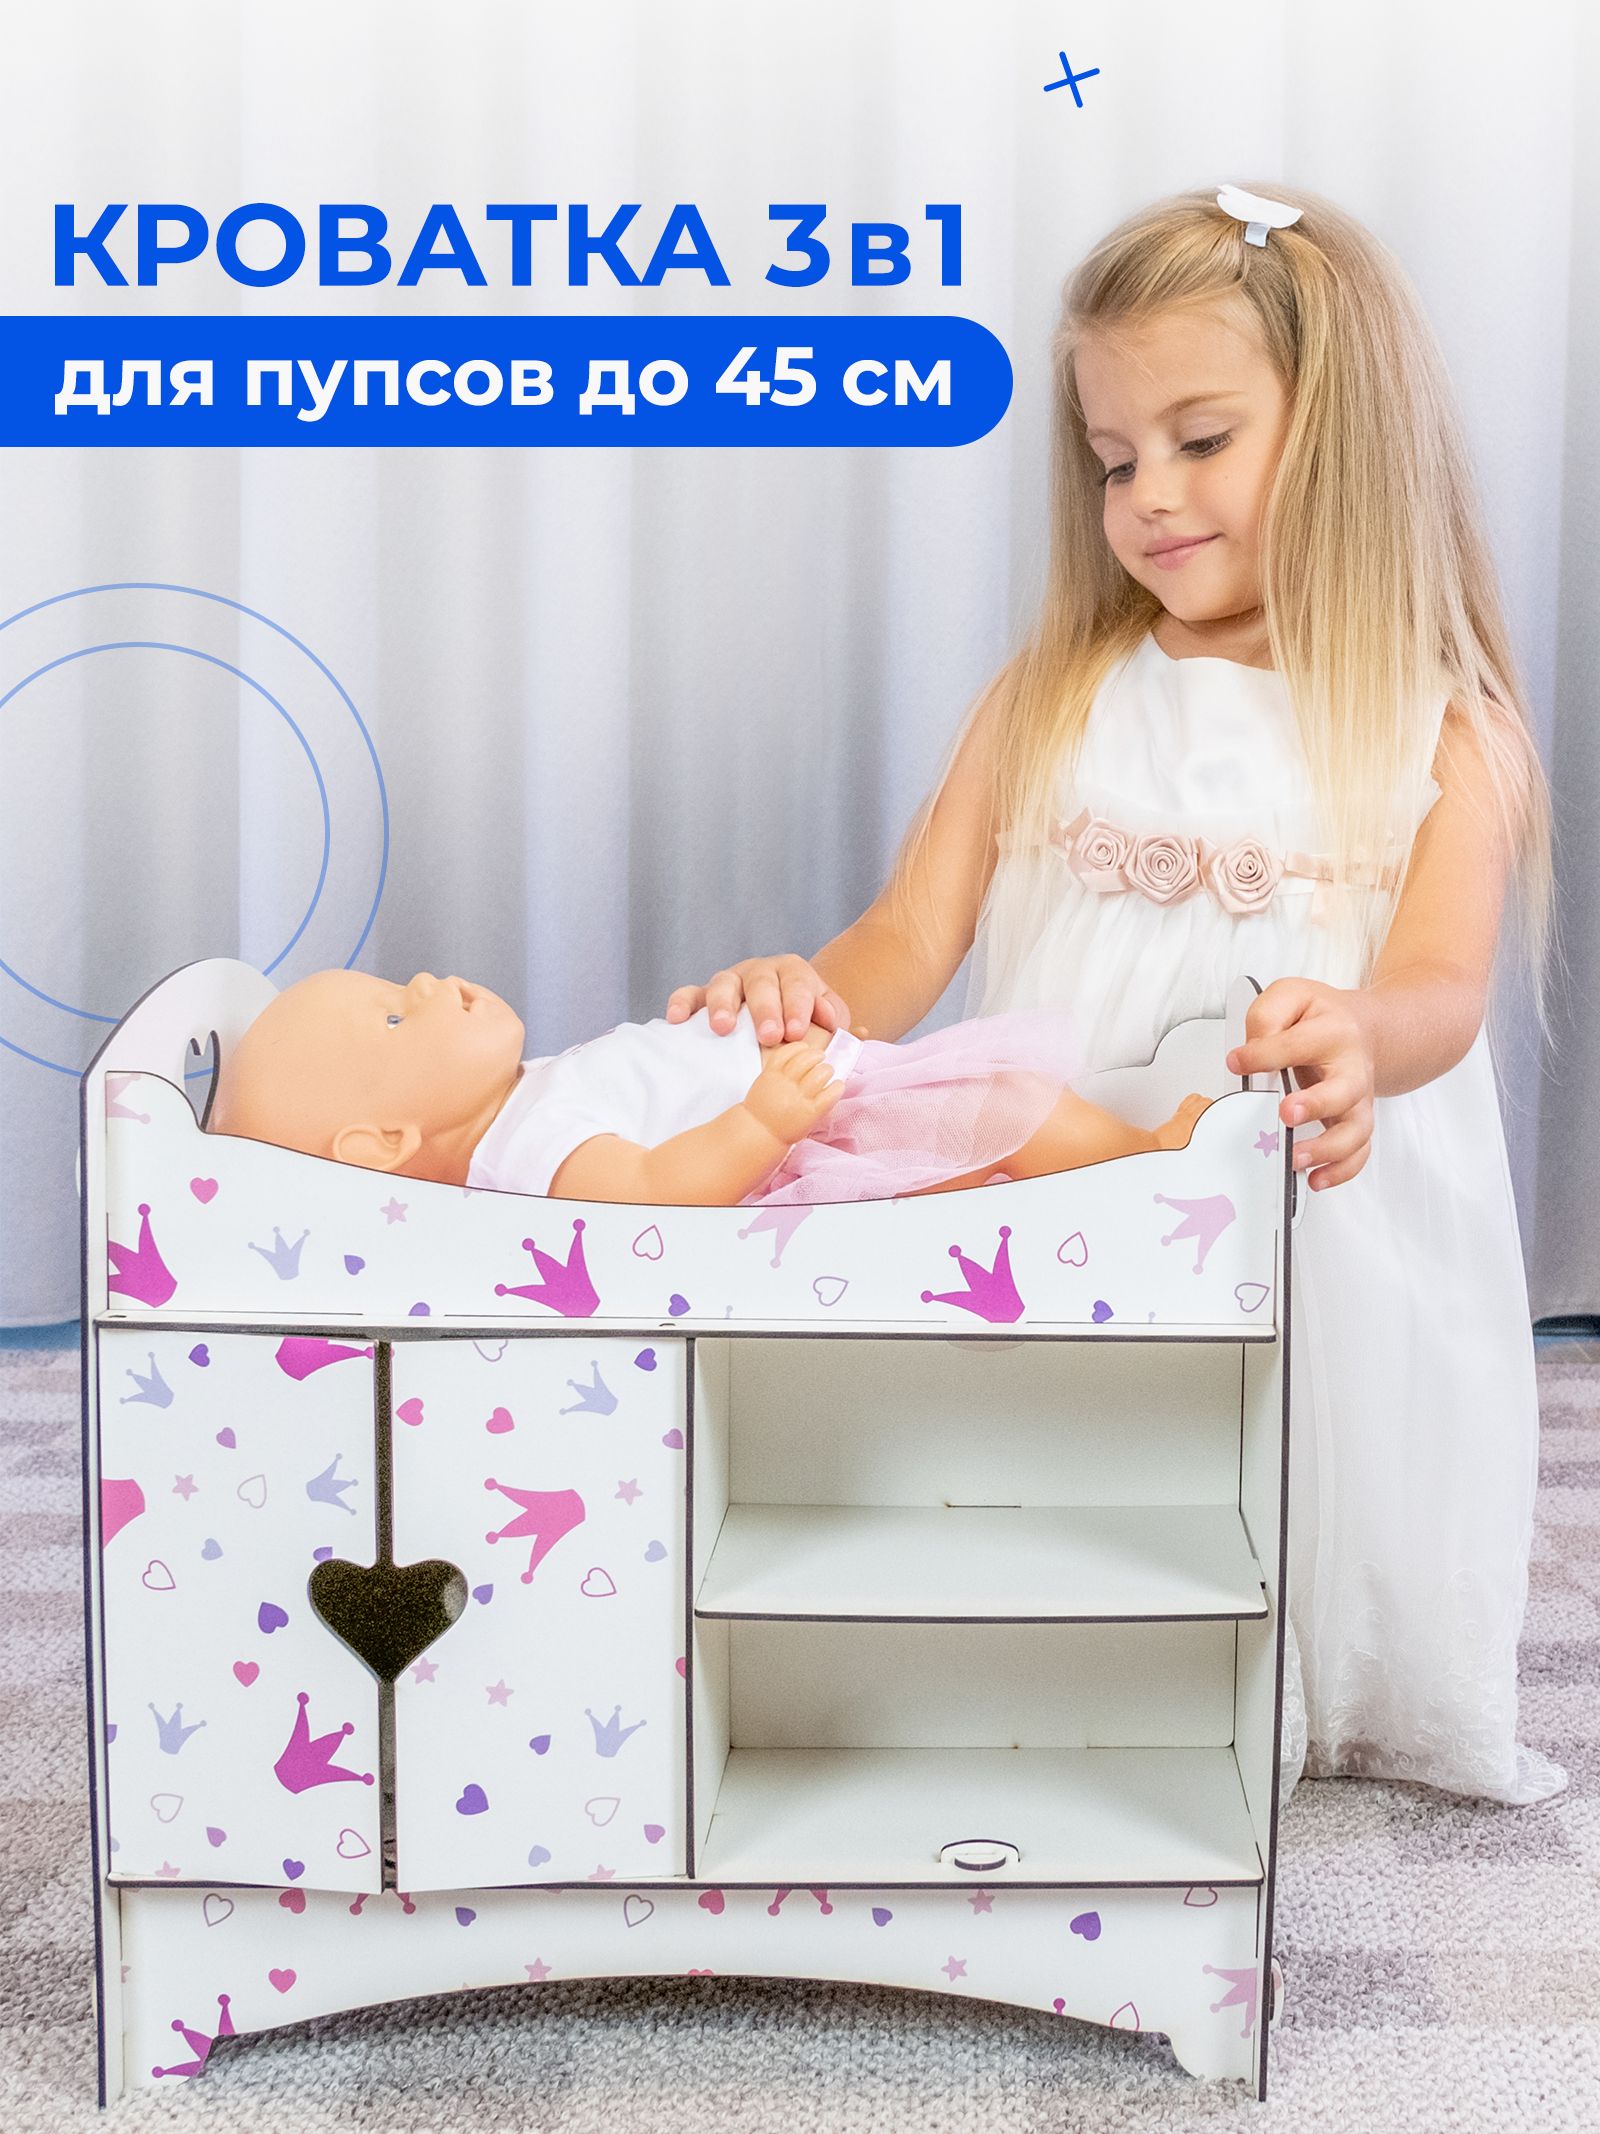 Кроватки для кукол: каталог, цены, продажа с доставкой по Москве и России — «эталон62.рф»